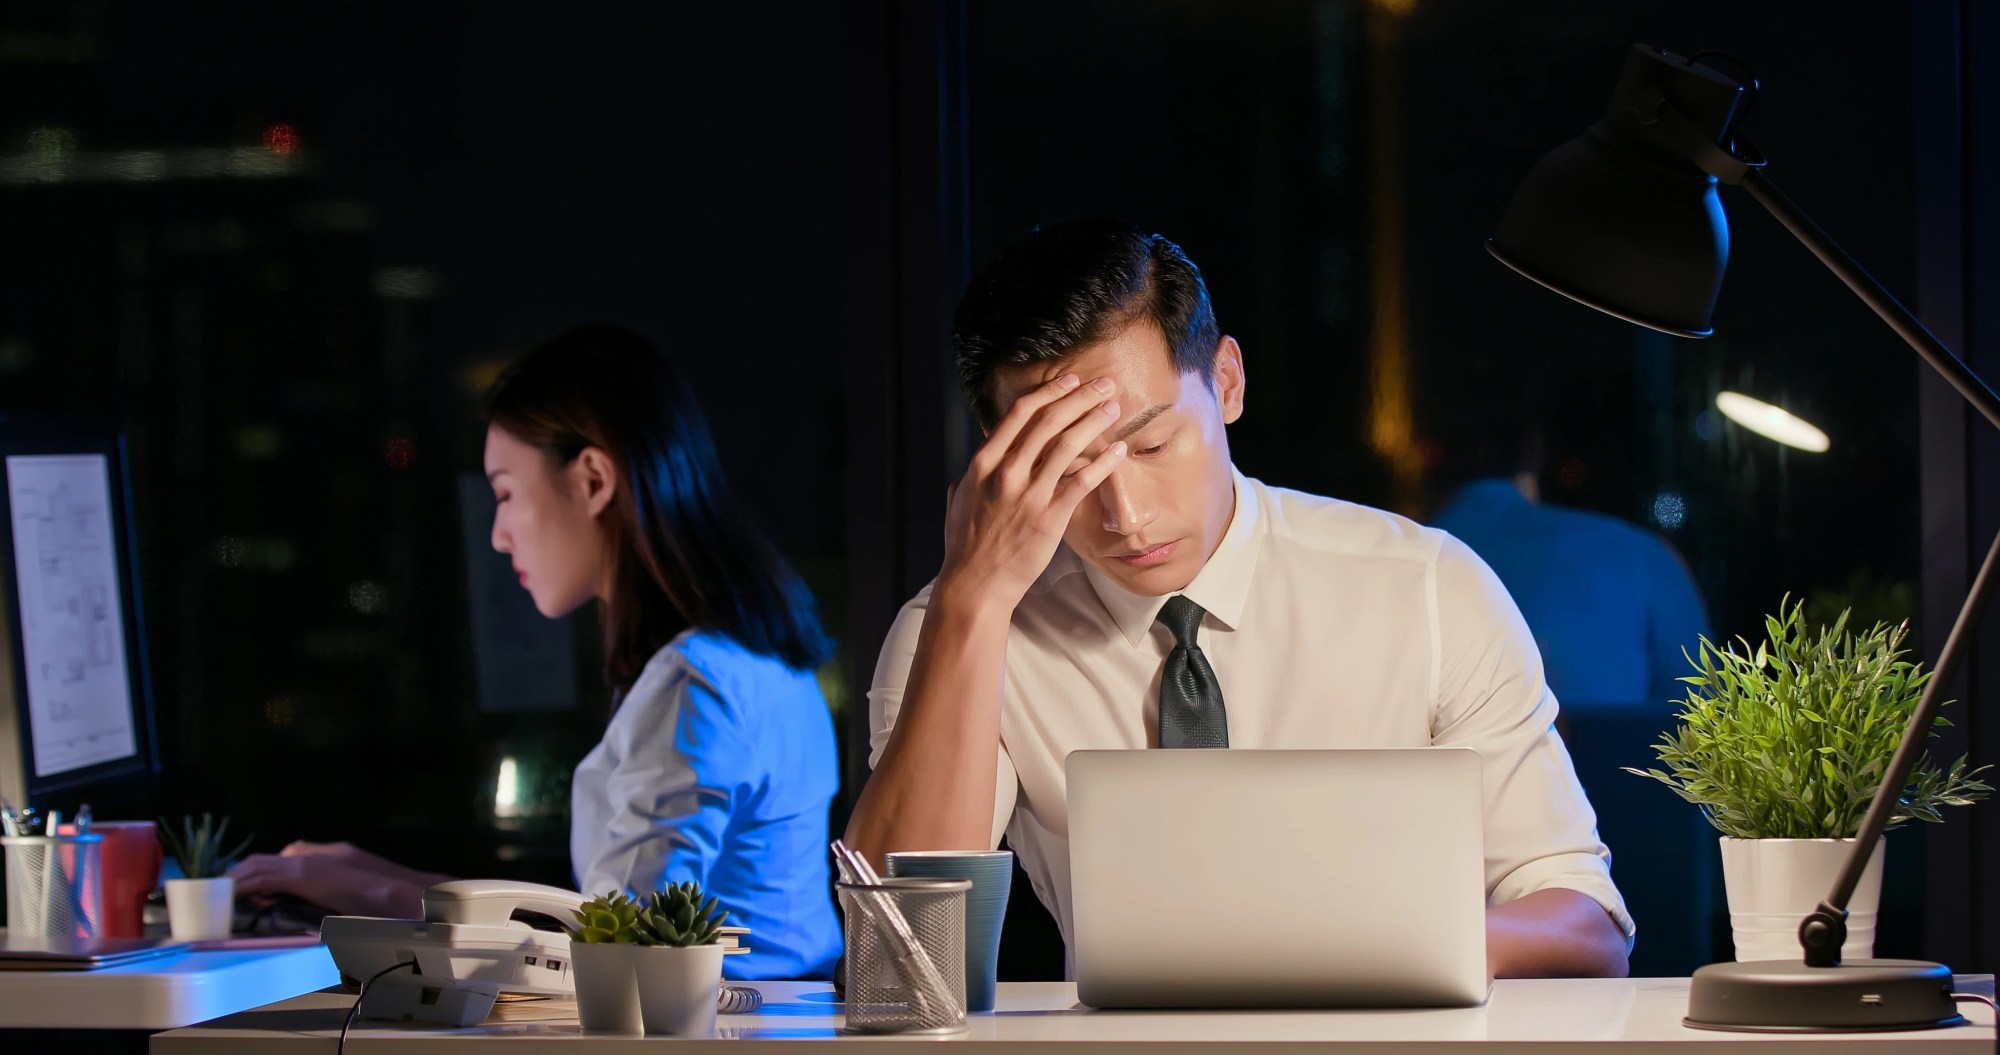 「燃え尽き症候群」のイメージ_暗い仕事場で頭を抑えながら仕事をする男性